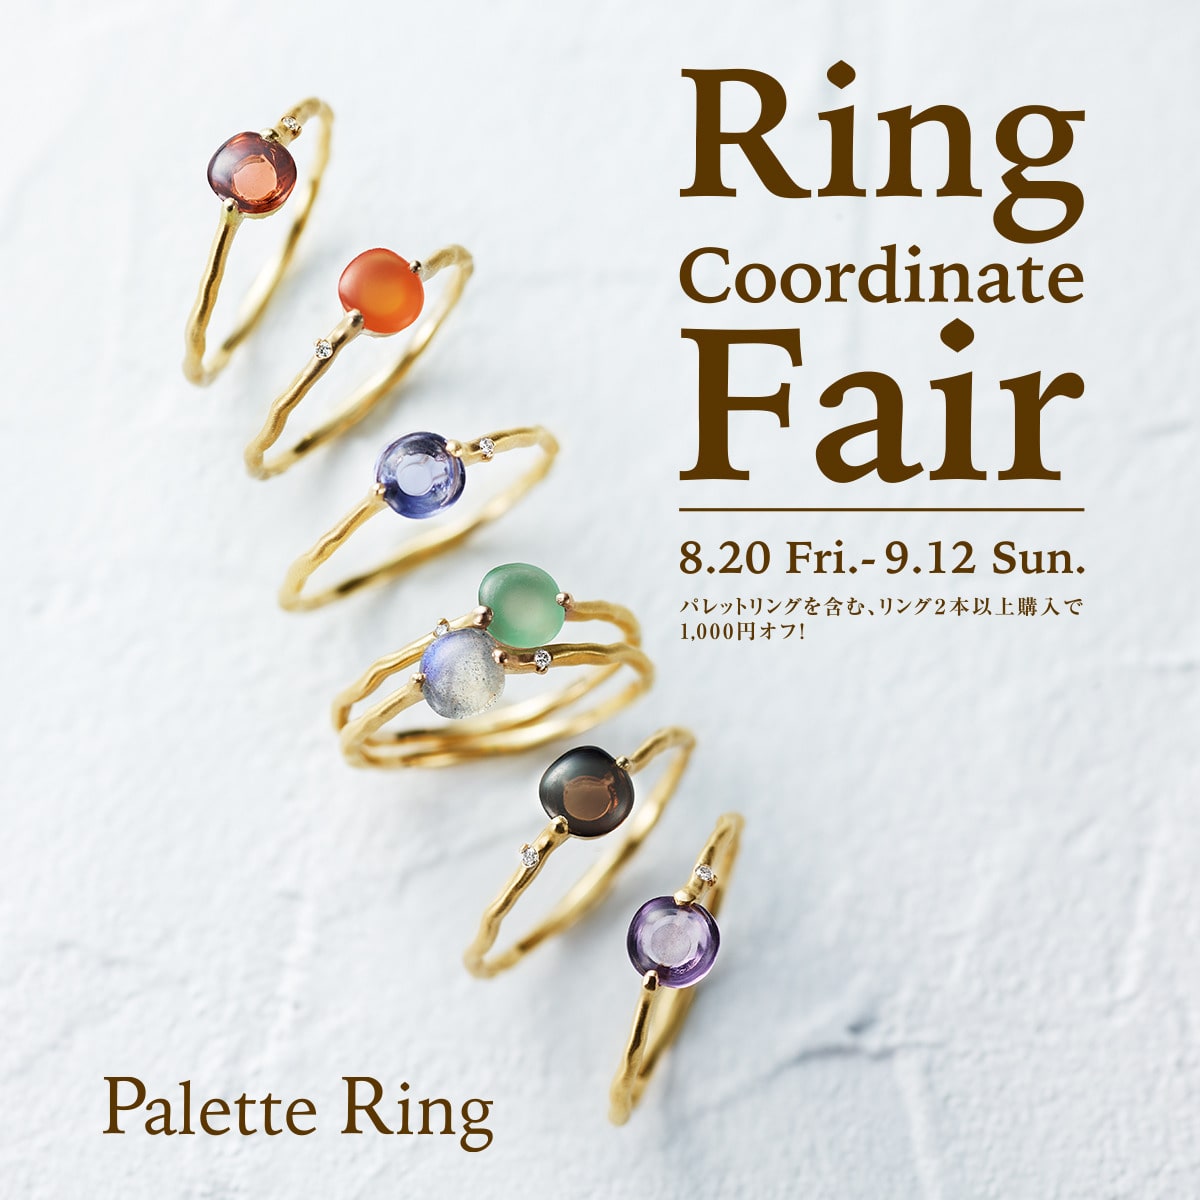 Ring Coordinate Fair